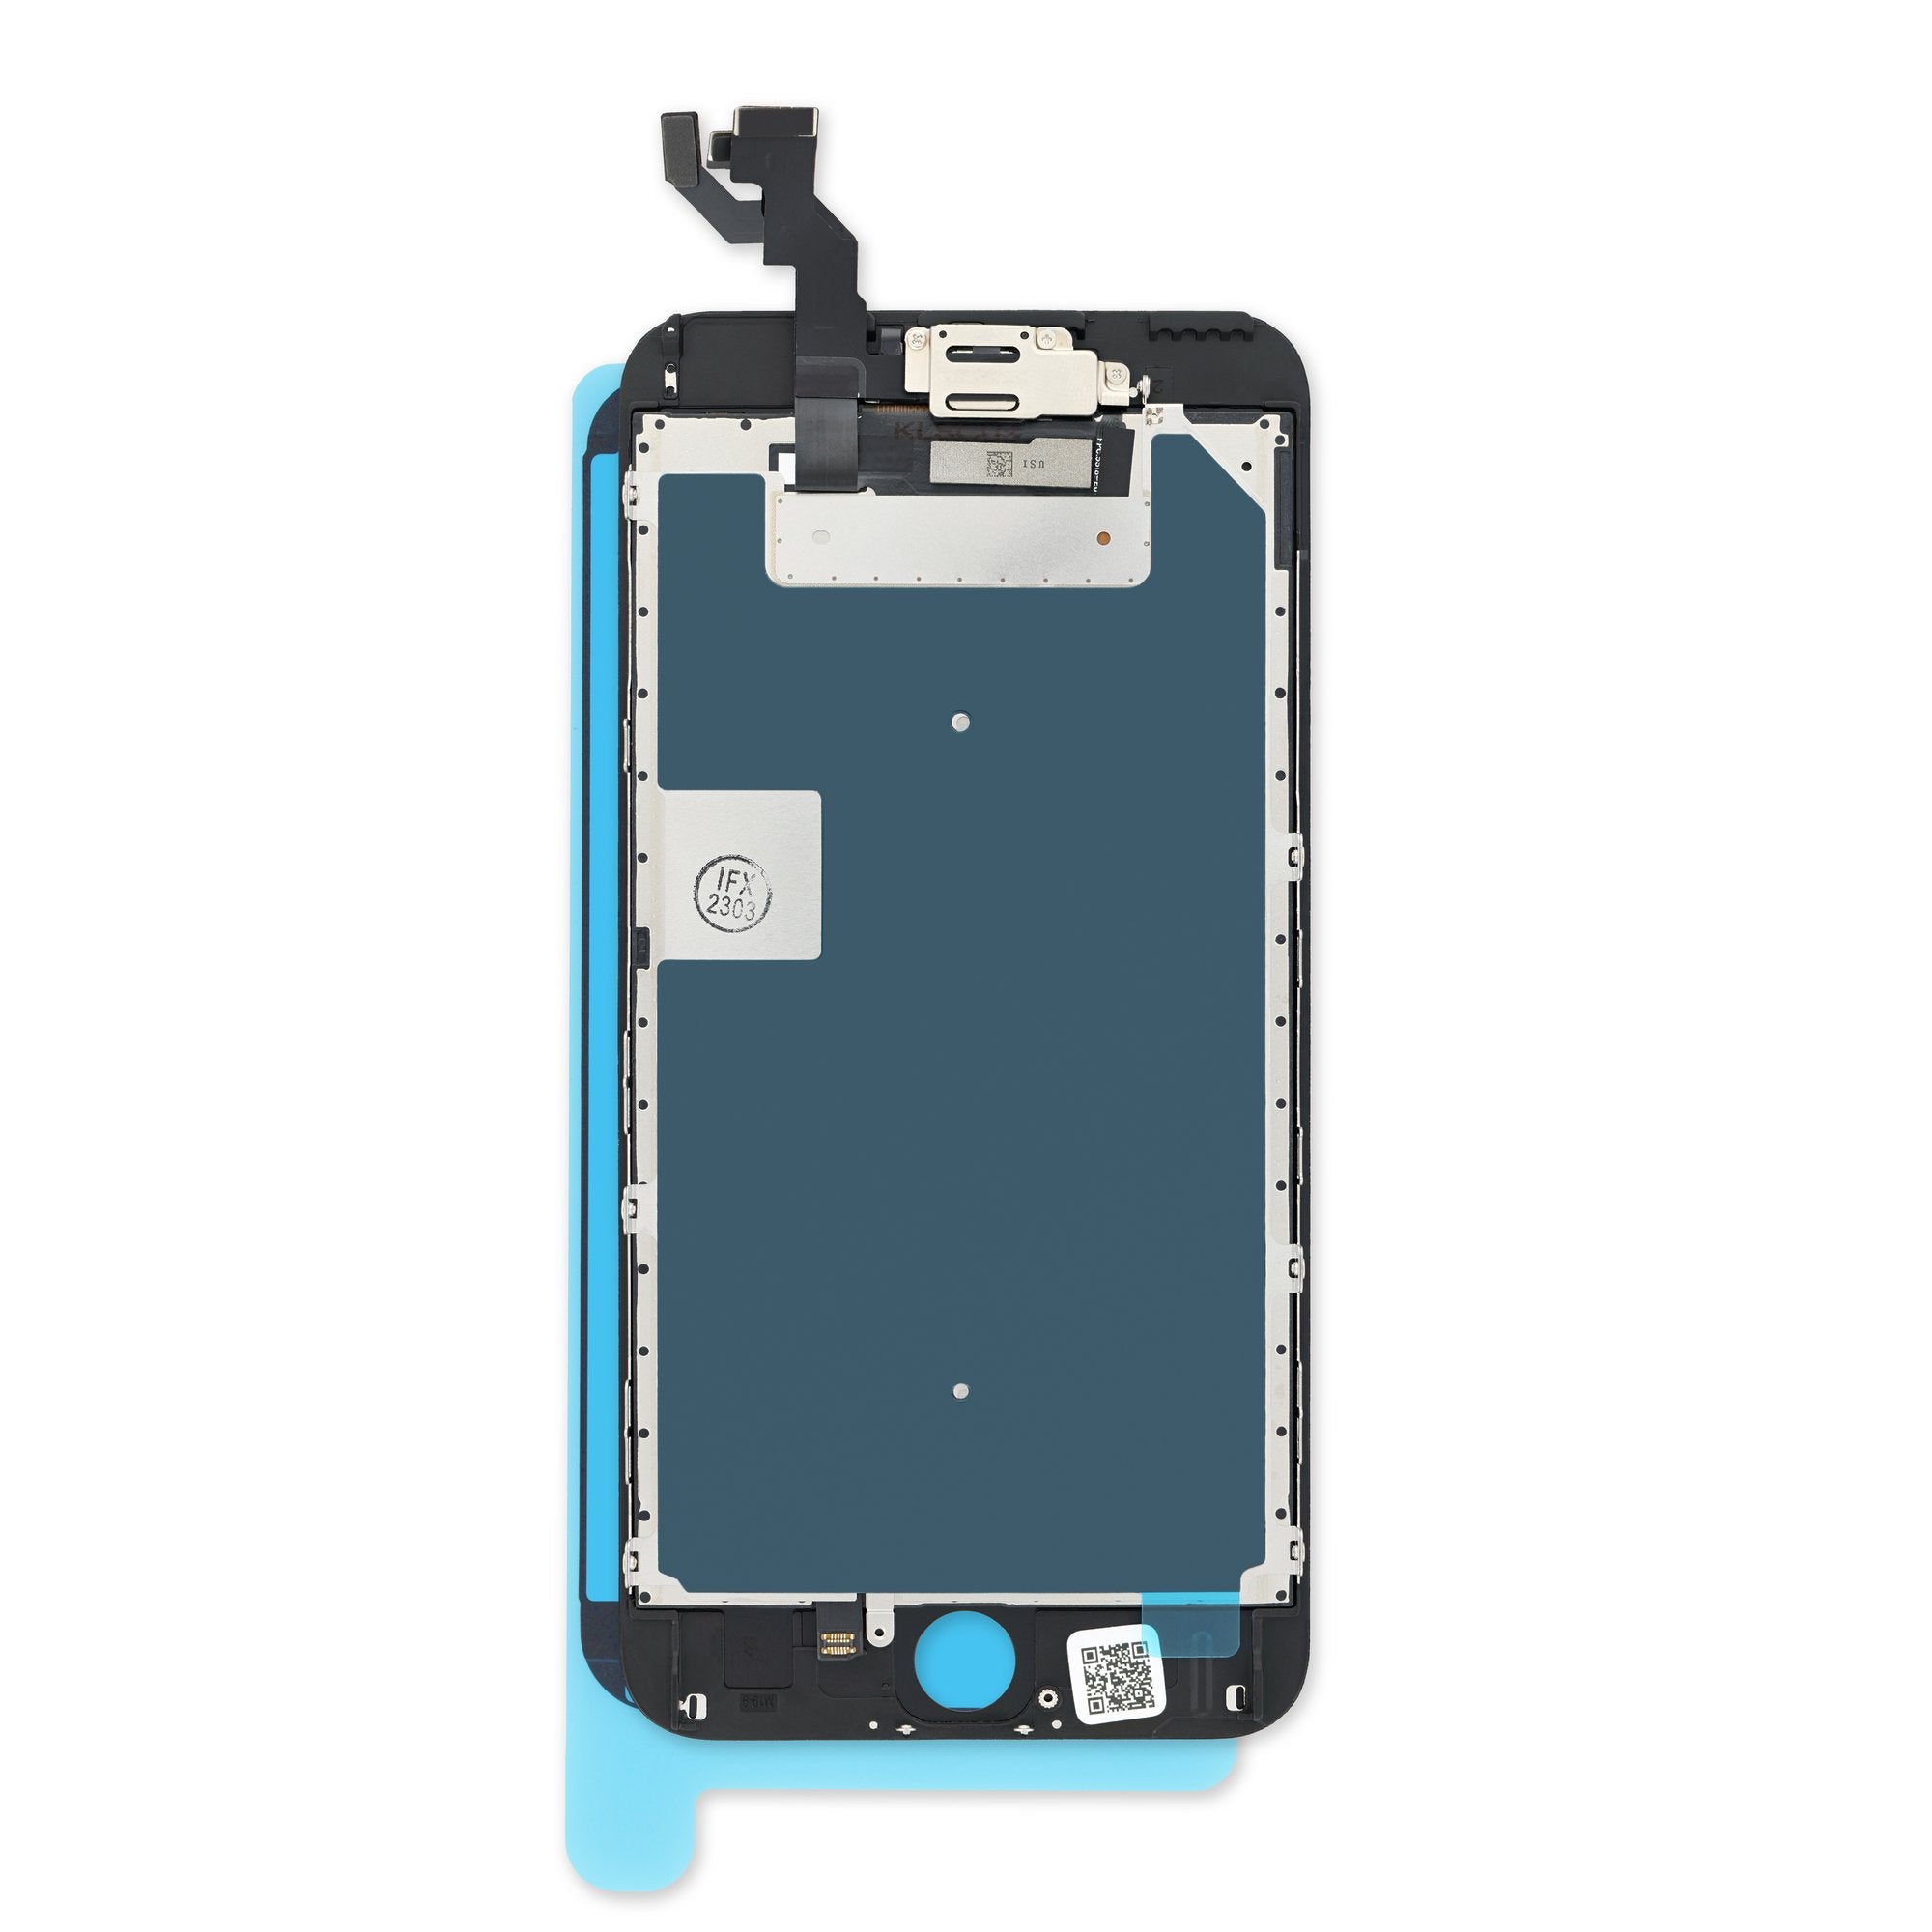 Yodoit Écran pour iPhone 6s Plus LCD Vitre Tactile Complet Remplacement  Assemblé avec Caméra Frontale, Bouton Home, Haut Parleur Interne + Outil de